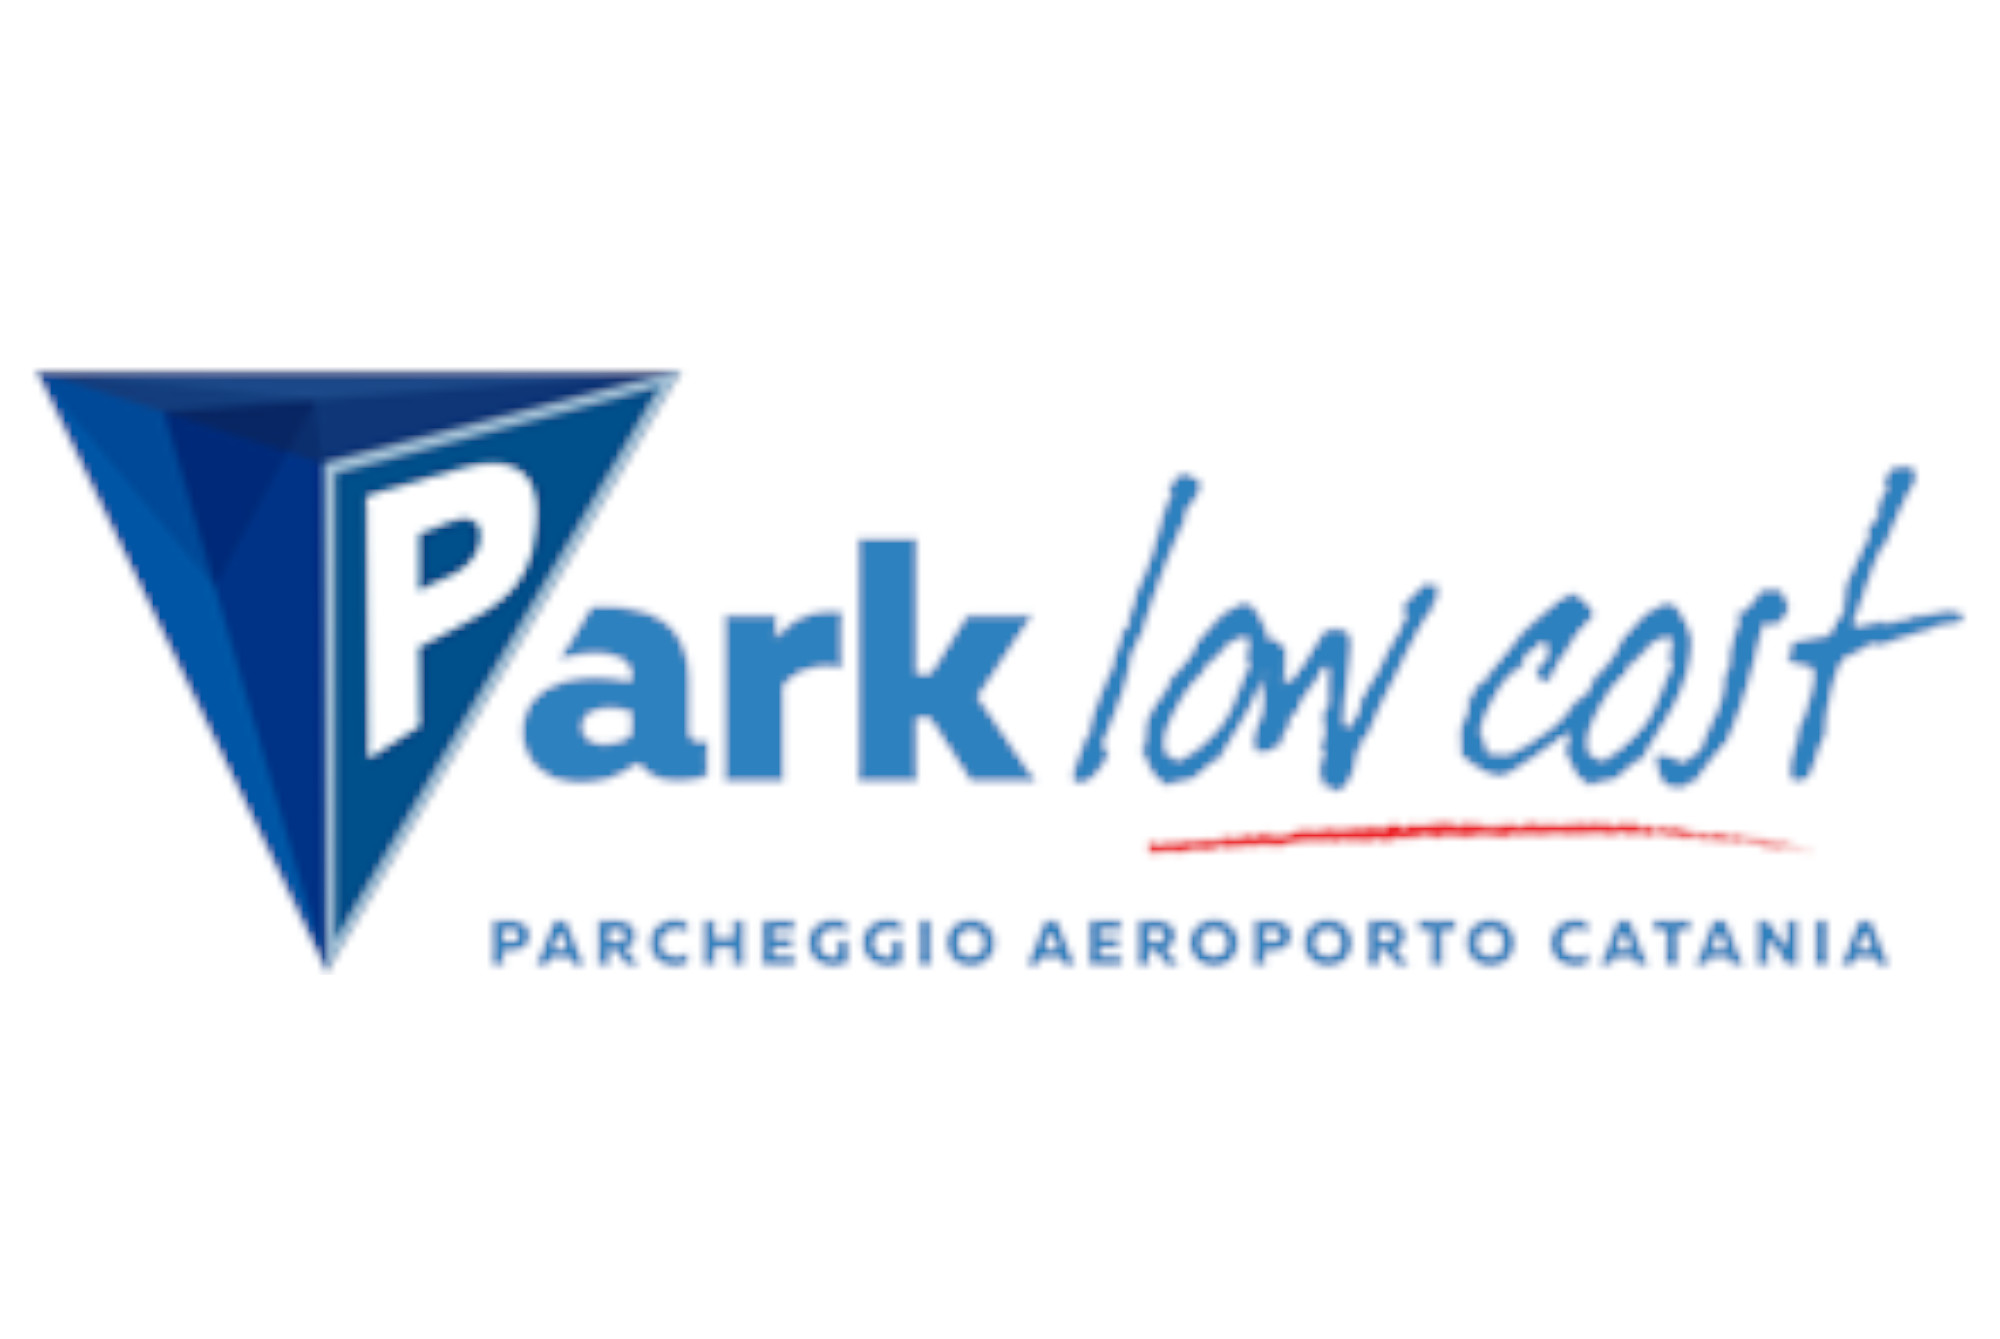 ParkLowcost (Paga online) - Parcheggio Aeroporto Catania - picture 1